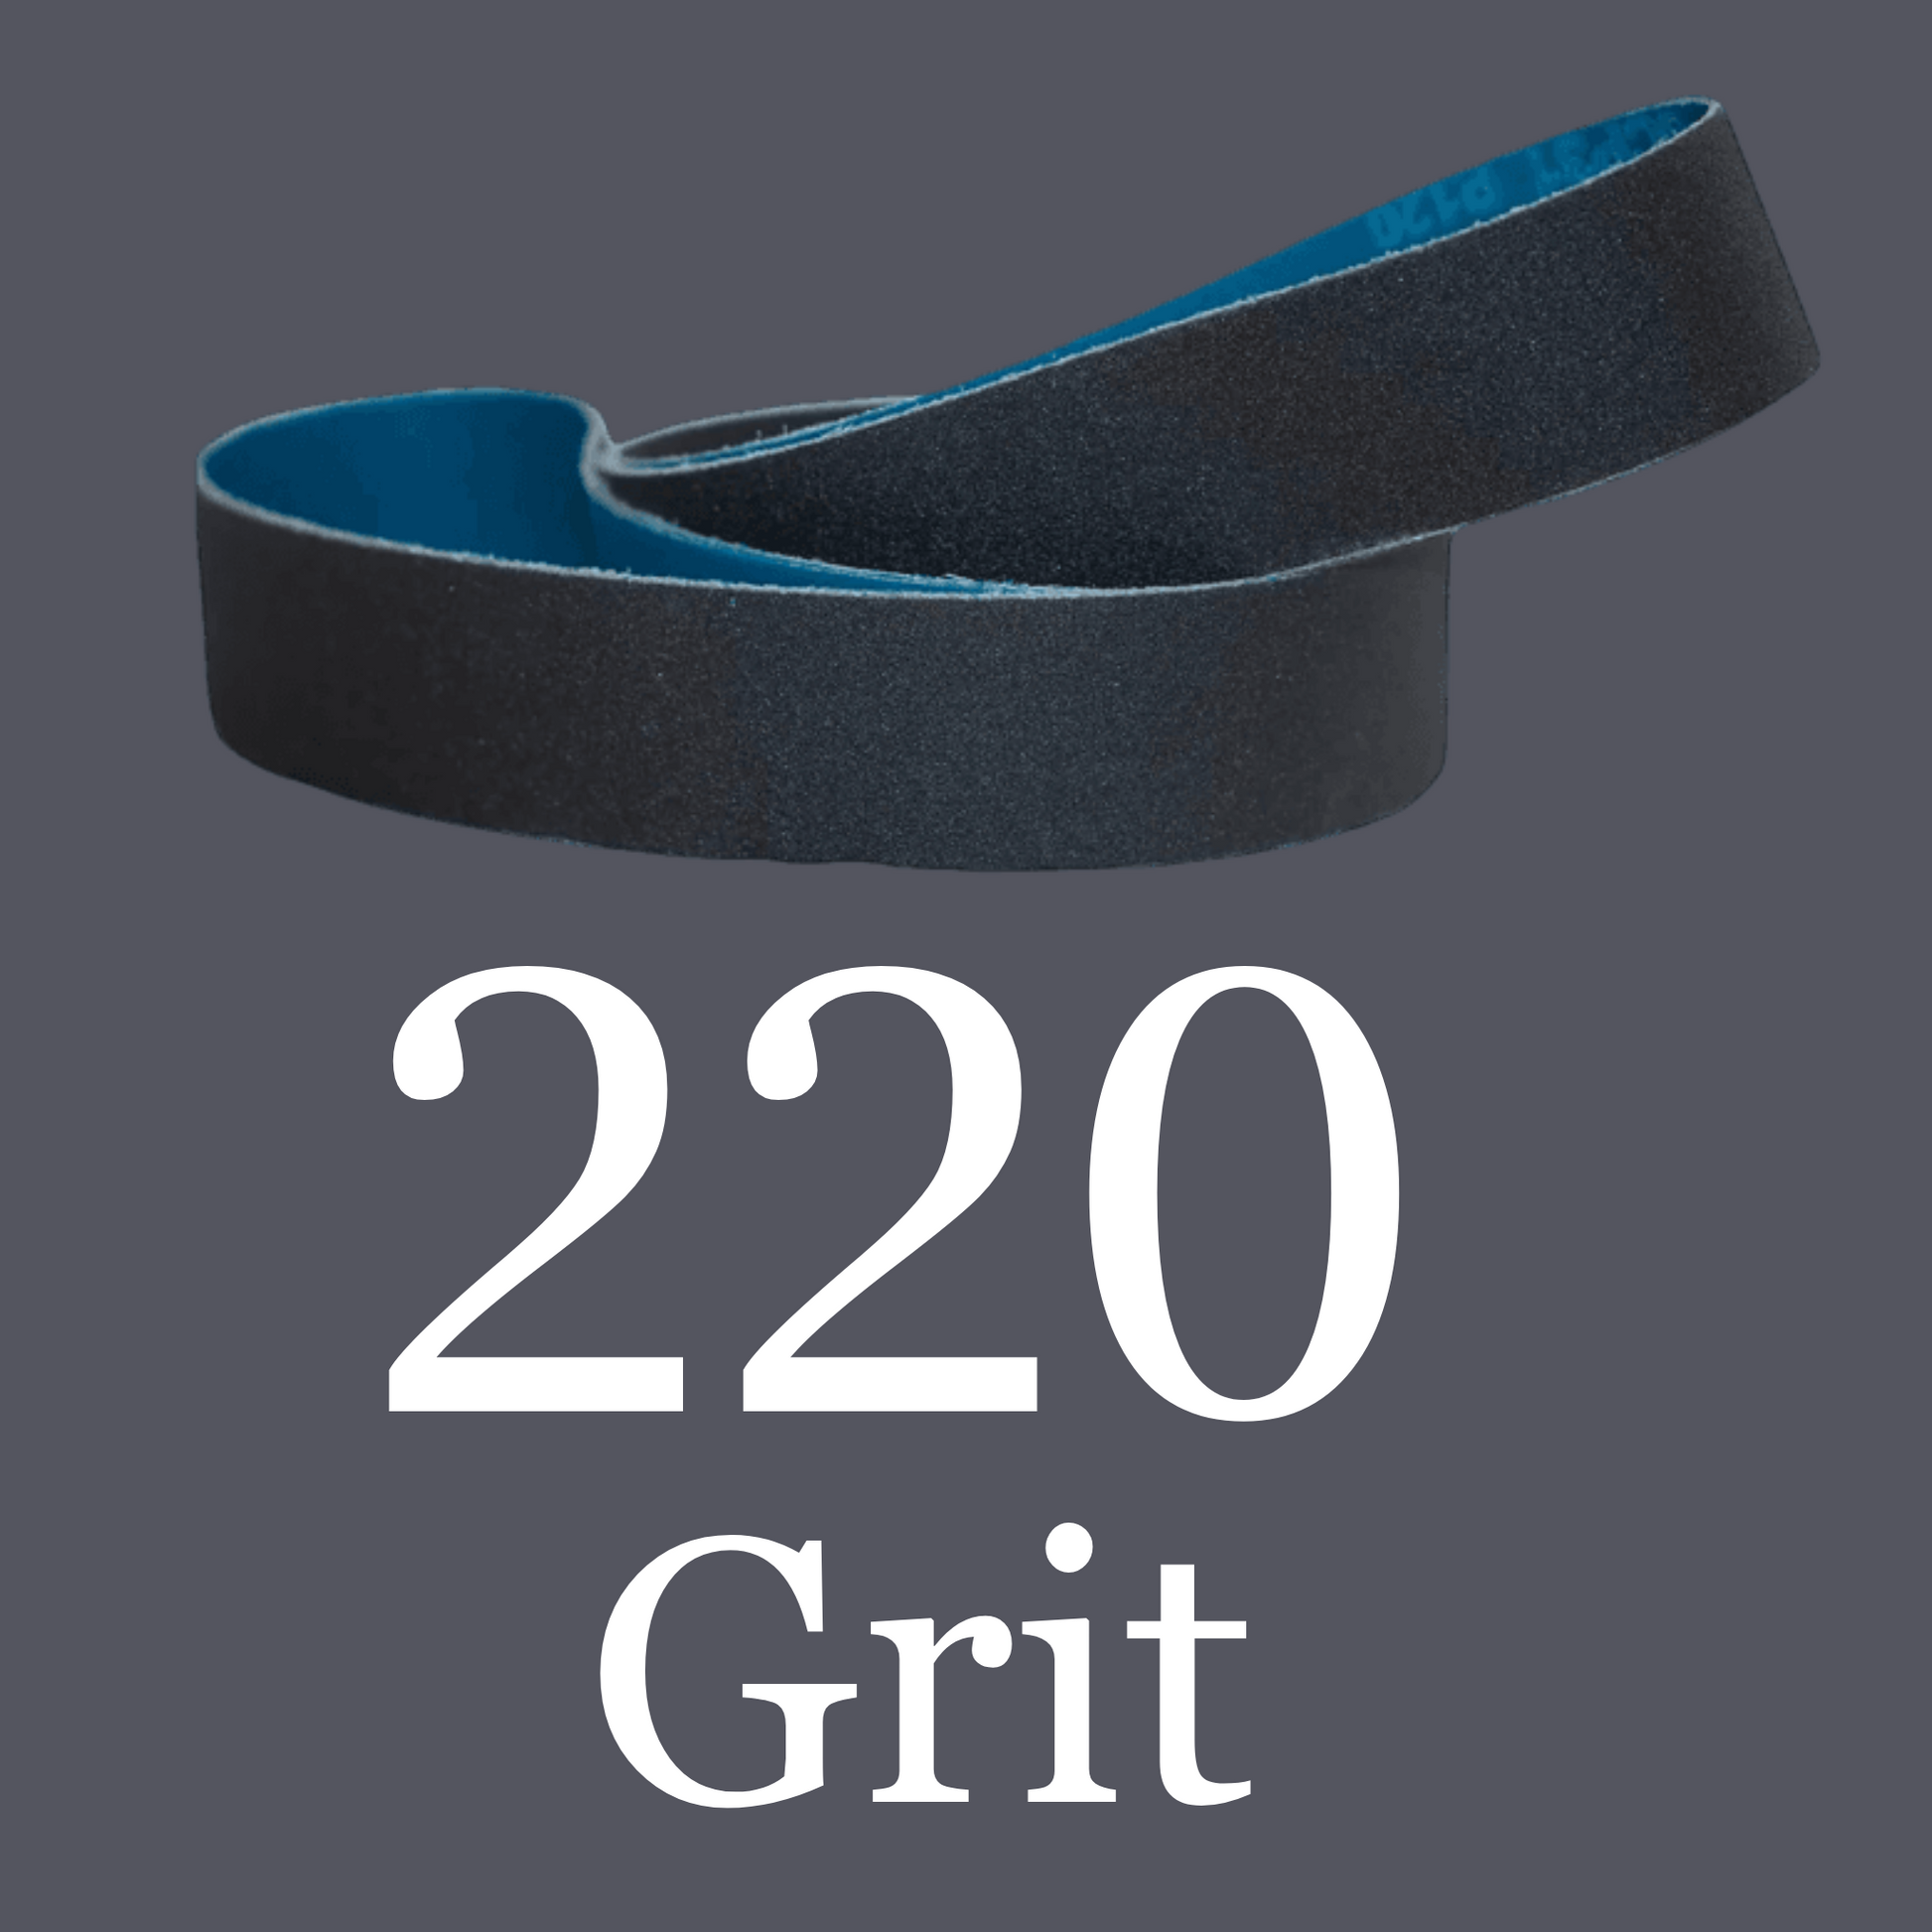 2” x 72” Premium Black Silicon Carbide “Y” Belts 220 Grit